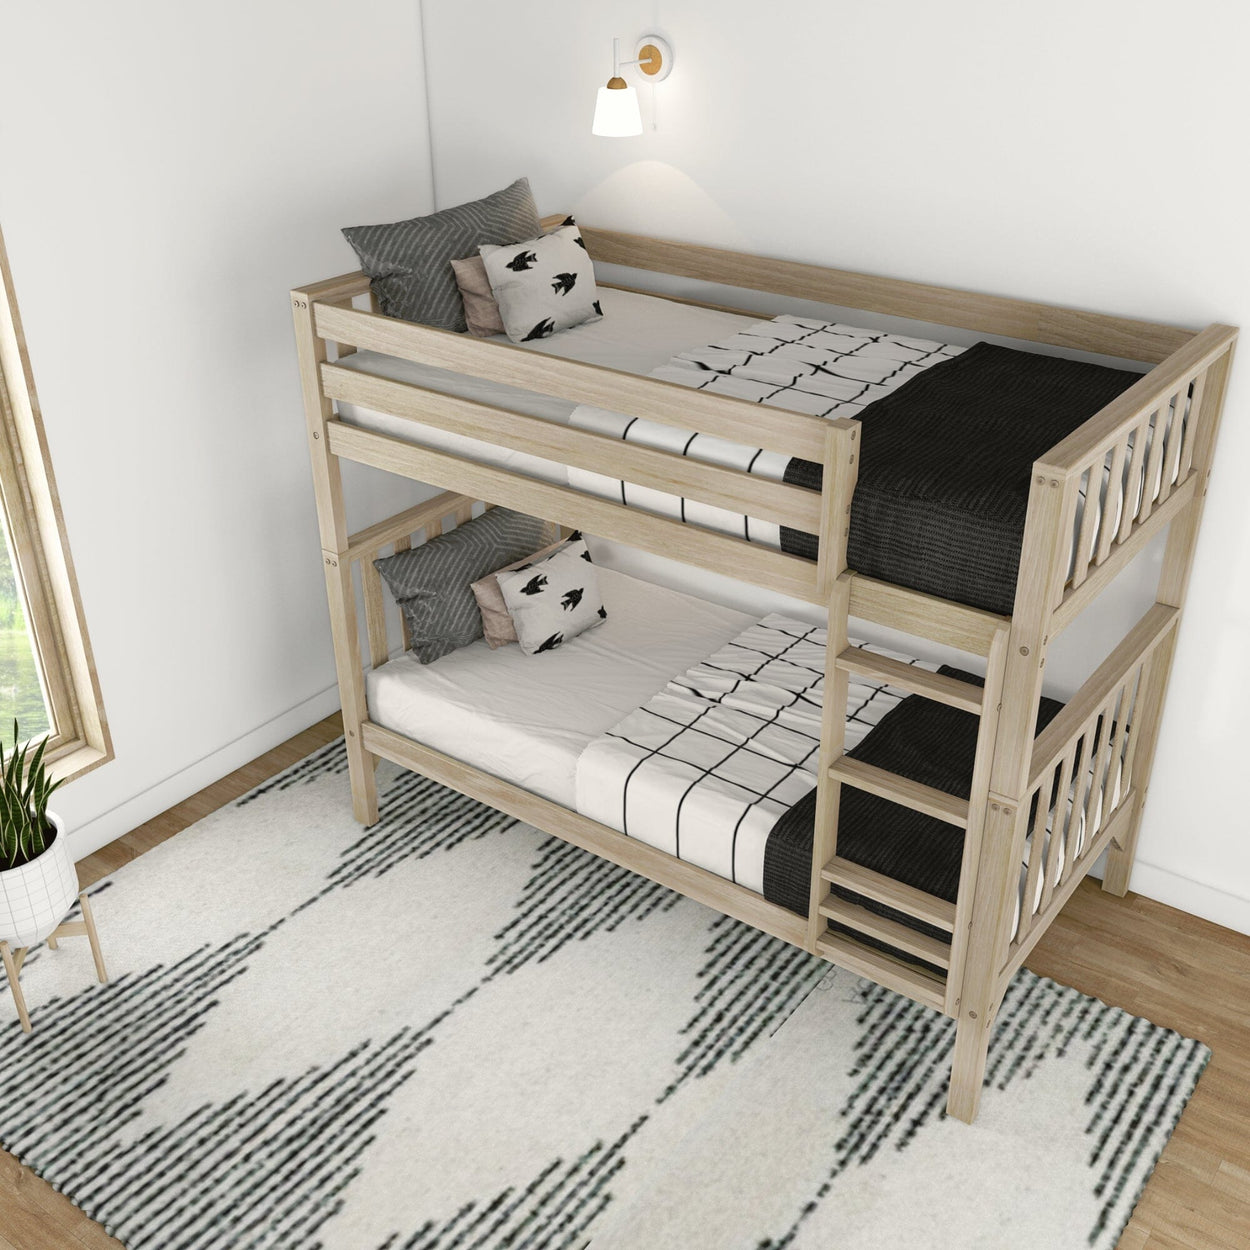 210201-010 : Bunk Beds Scandinavian Twin over Twin Bunk Bed, Blonde